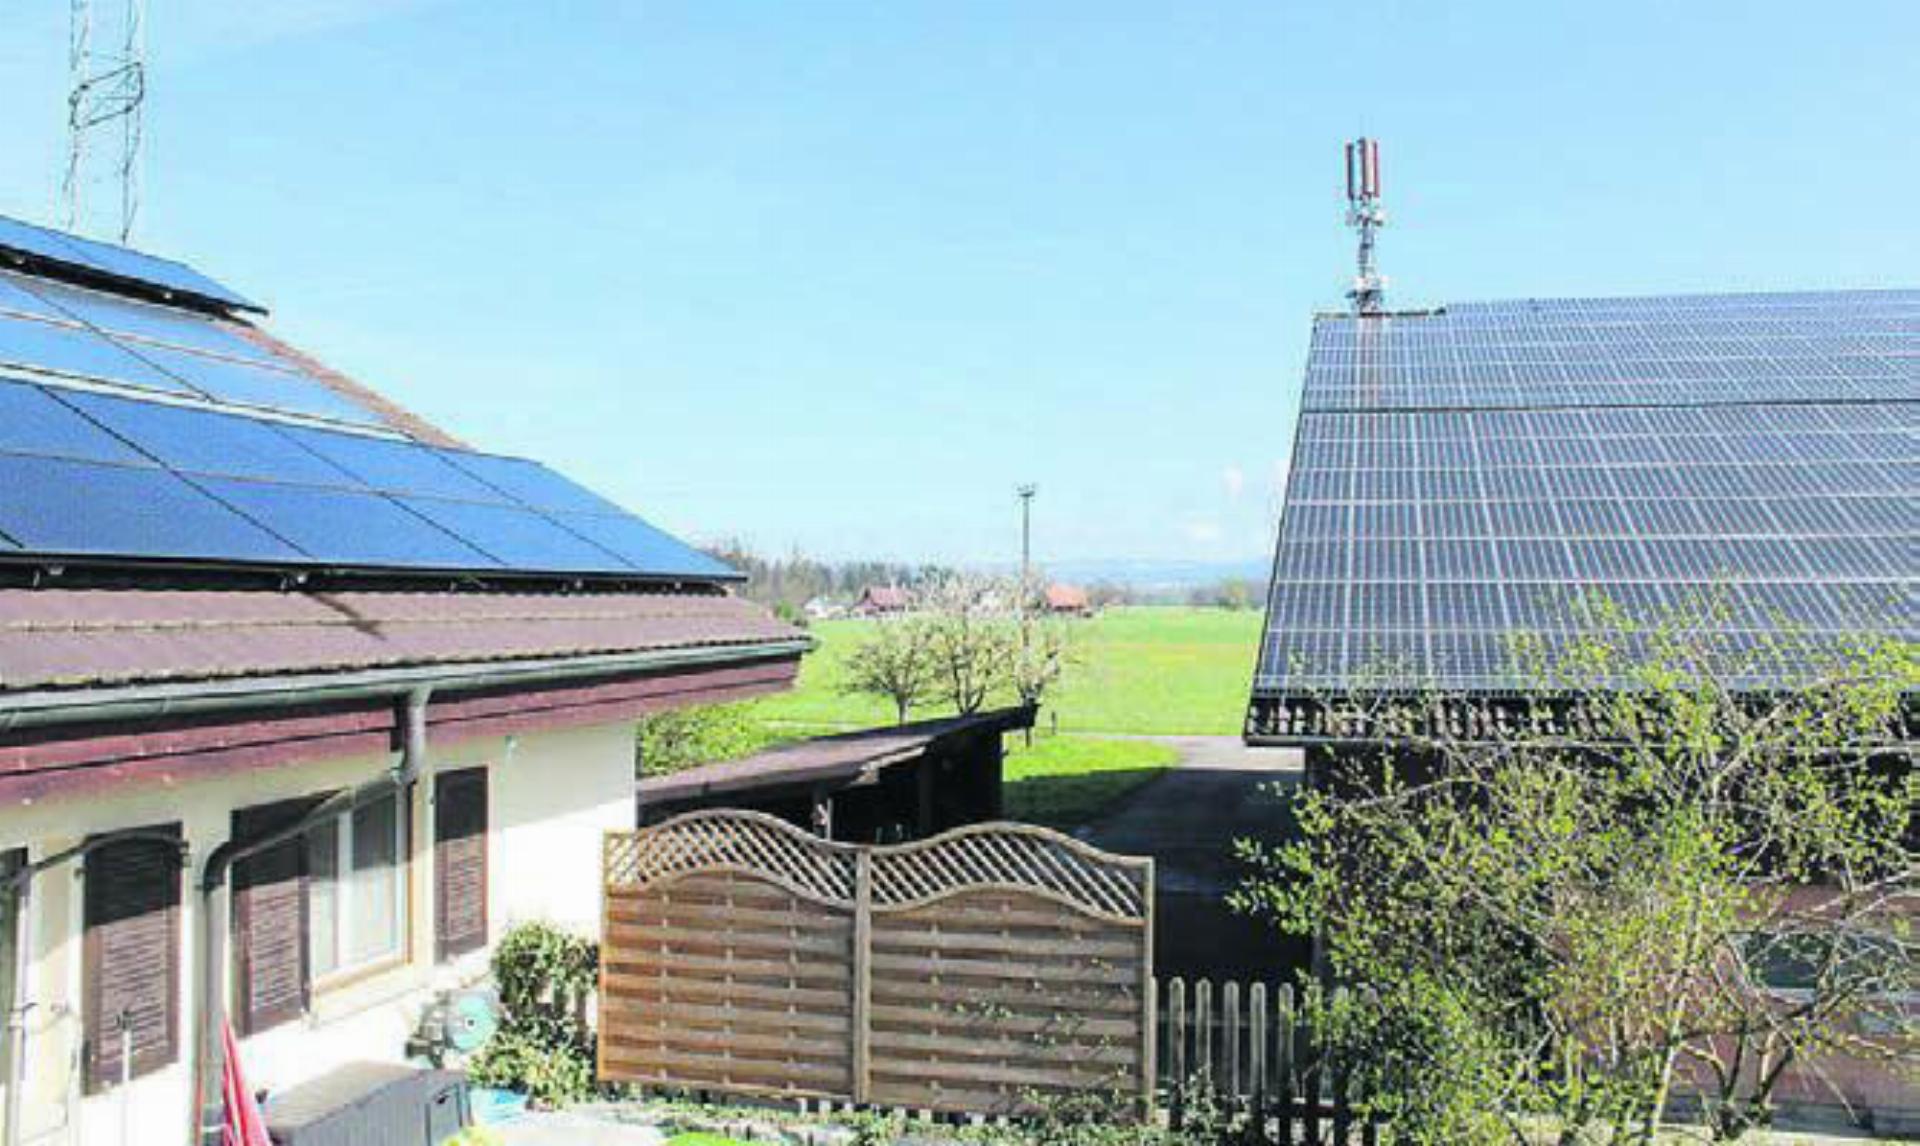 Kleine PV-Anlage, solarthermische Anlage und grosse PV-Anlage auf dem Bucherhof in Mühlau. Bild: zg